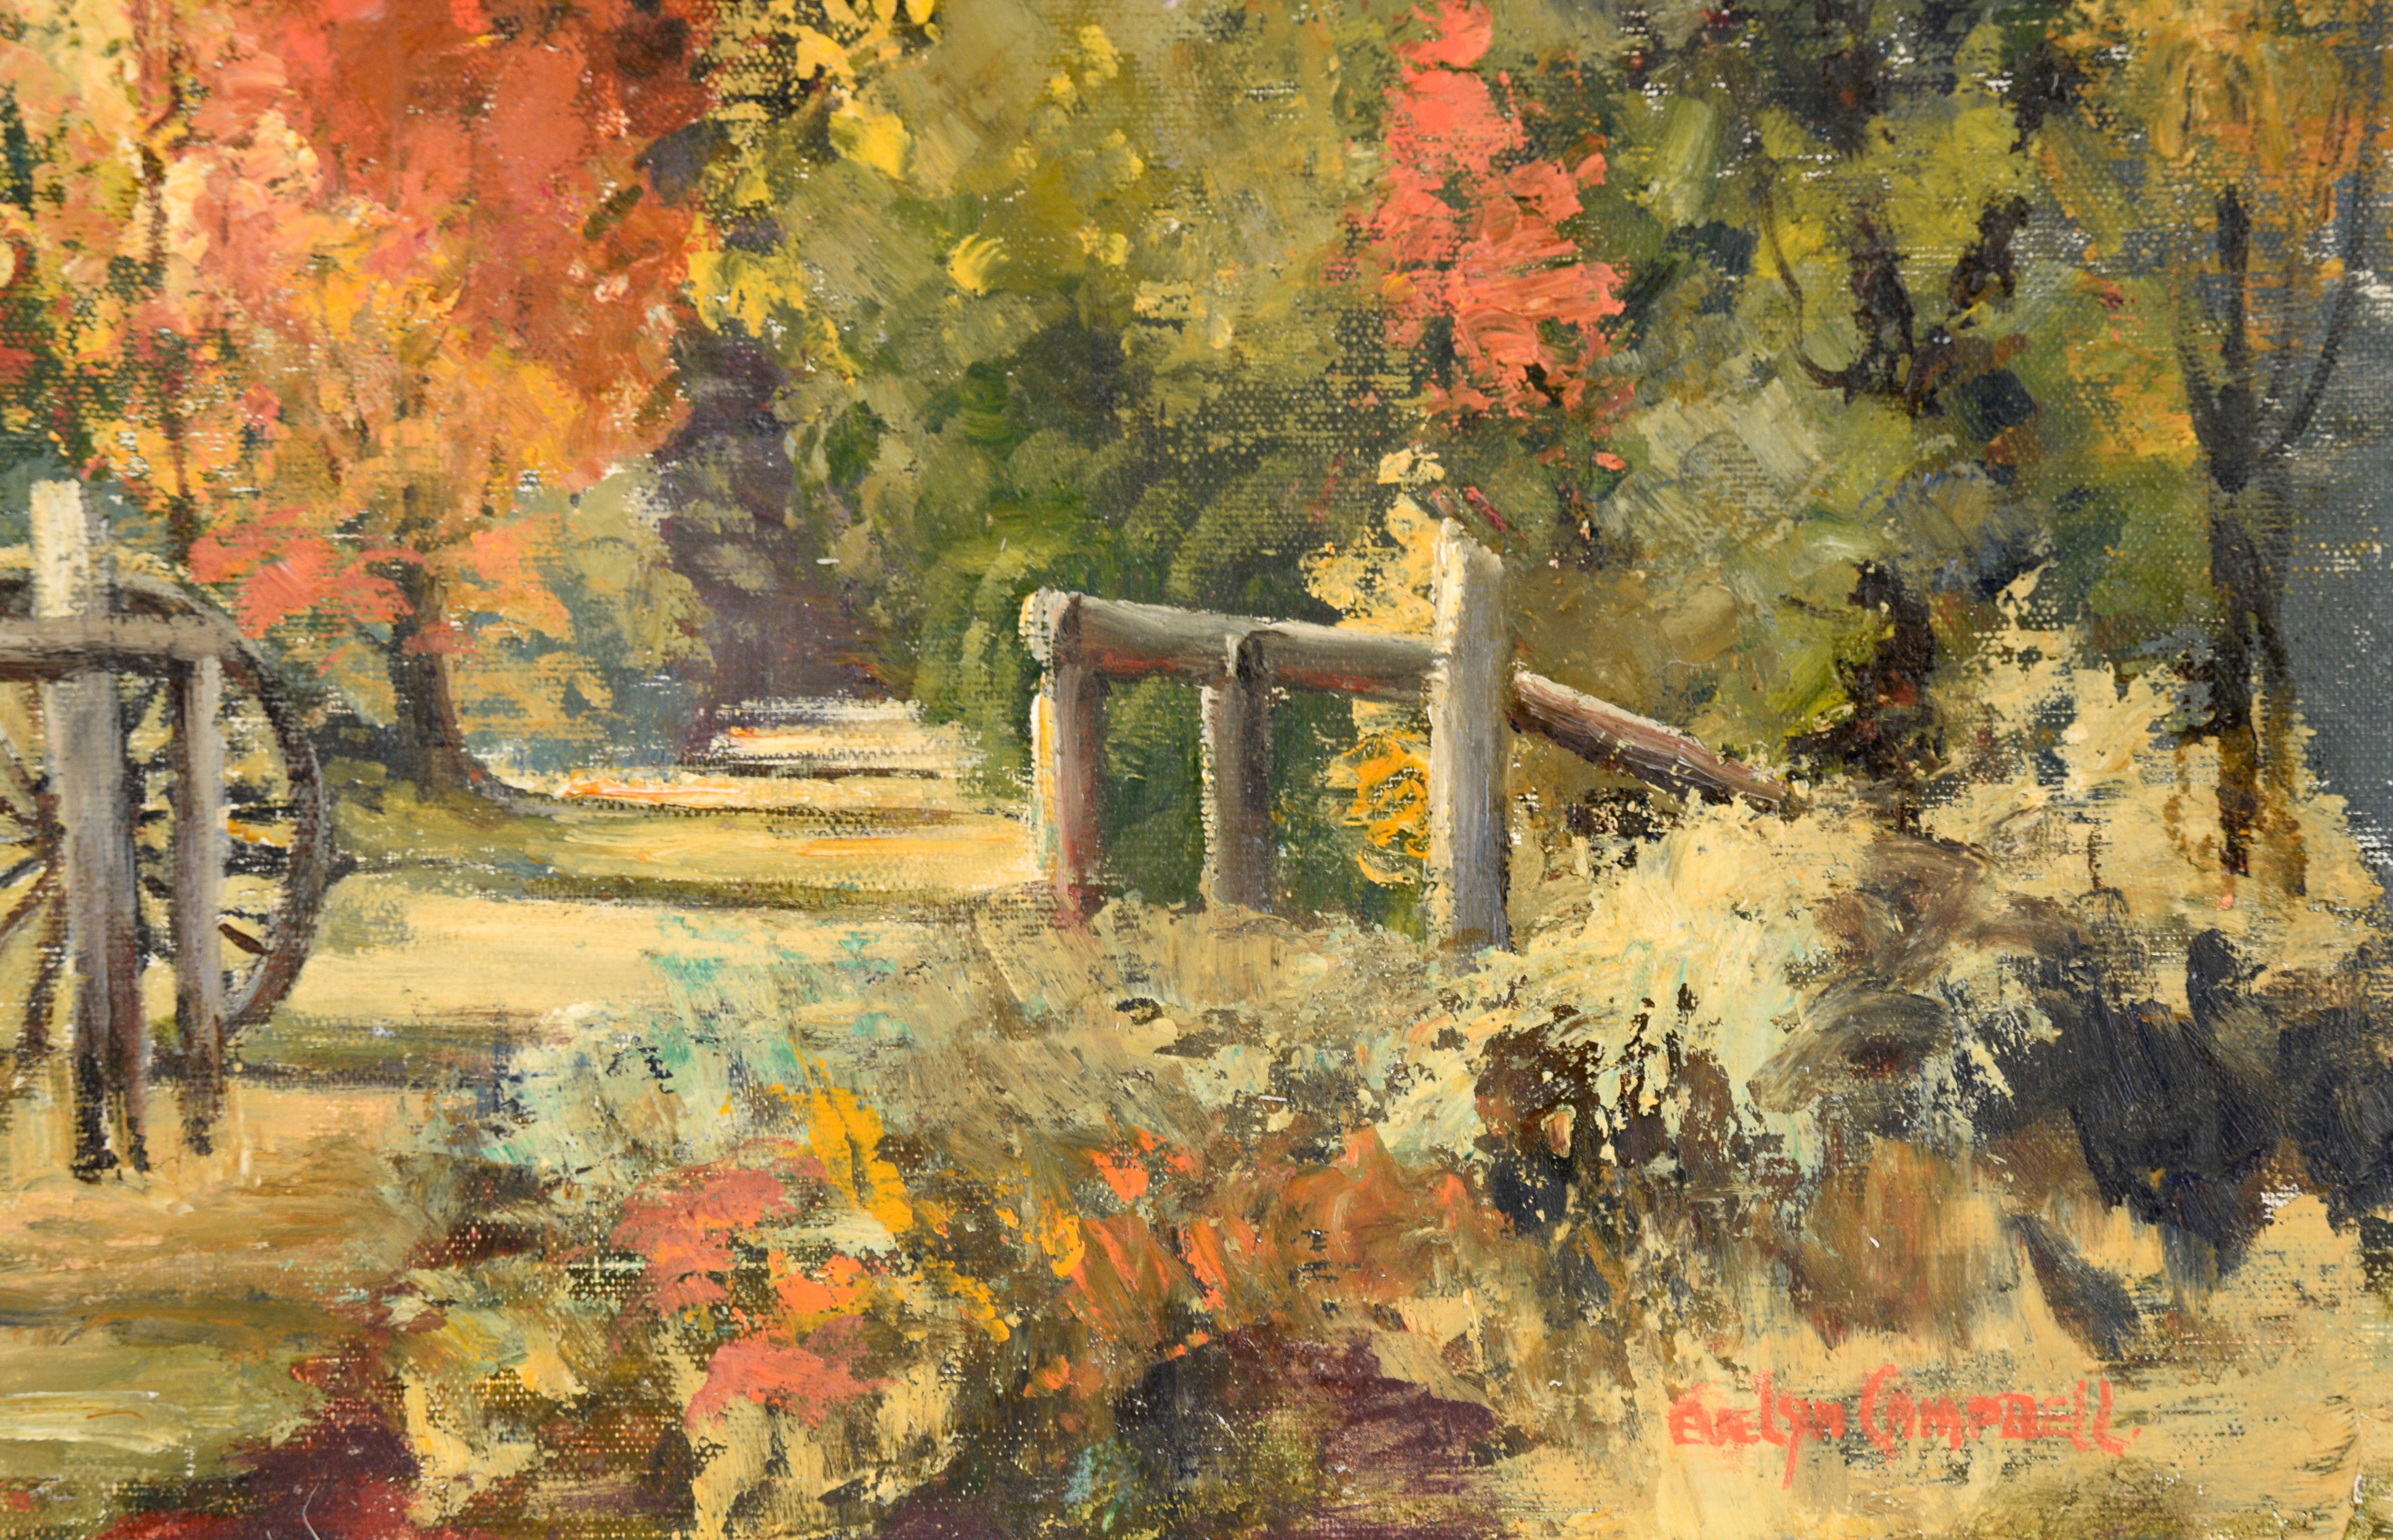 Paysage luxuriant d'une forêt d'automne par Evelyn Campbell (Australie, 20e siècle). Un chemin part de la partie inférieure droite de la composition et passe par une fente ouverte dans une clôture en bois, sur laquelle s'appuie une roue de chariot.